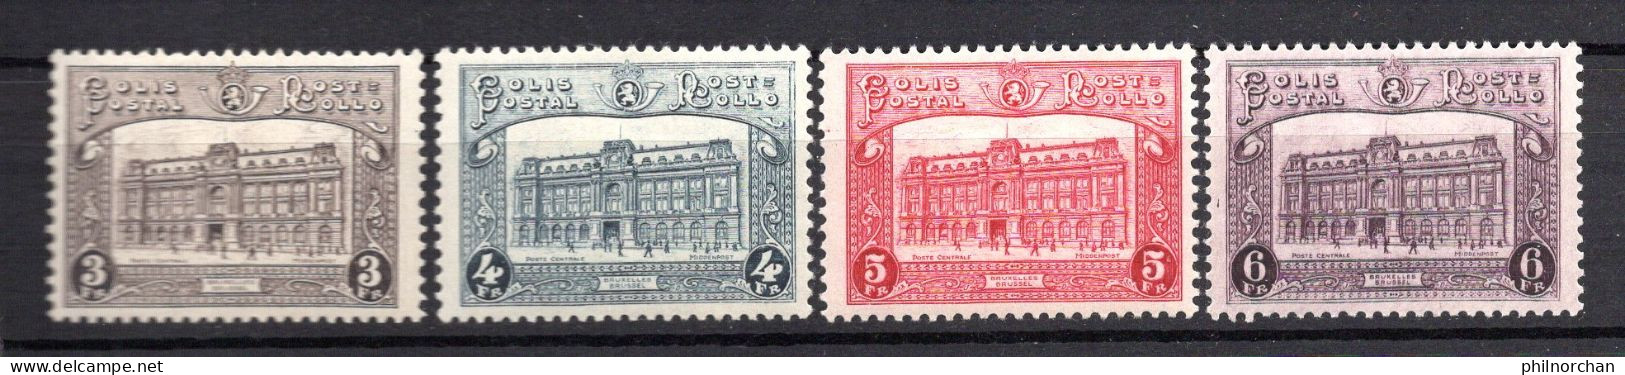 Belgique 1929 Colis Postaux Neufs*  N°170,171,172,173 Série Complète  5 €   (cote 37,50 €, 4 Valeurs) - Ungebraucht